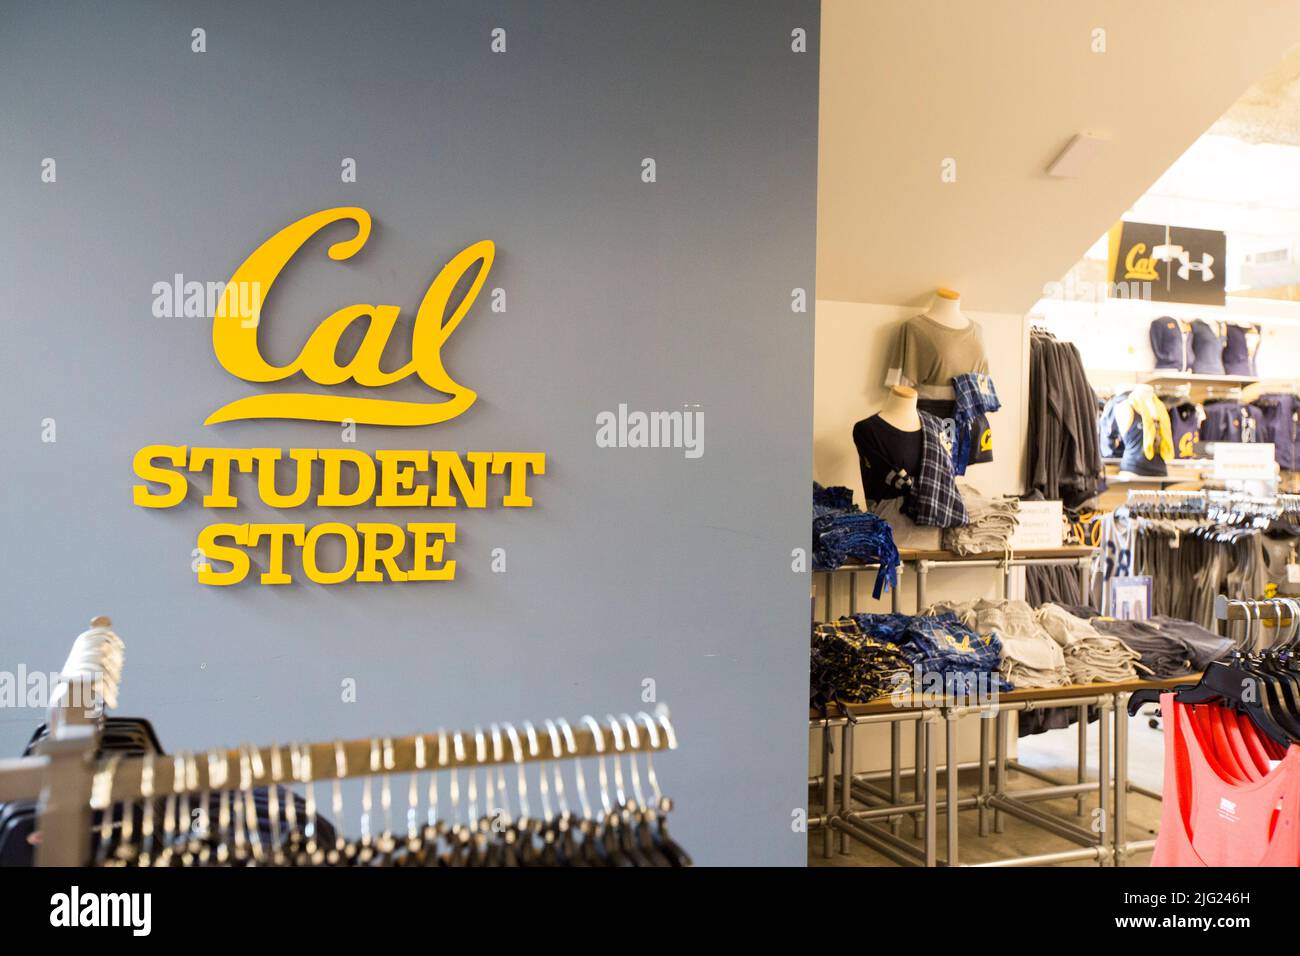 5 avril 2017, Berkeley, Californie, Etats-Unis : le magasin pour étudiants Cal, sur le campus de l'Université de Berkeley. Les entreprises sont souvent désireuses d'encrer des contrats avec des universités pour vendre des sweatshirts, des comptes bancaires ou du café sur le campus. Les universités publiques étant confrontées à des budgets serrés, elles recherchent plus qu'une relation transactionnelle. Avec les conseils des étudiants, UC Berkeley a créé des partenariats avec la Banque de l'Ouest, sous Armour et -- annoncé 11 avril -- le café de Peet qui inclut également des obligations contractuelles pour les entreprises de fournir des stages et des emplois, de financer un garde-manger de campus, et même d'enseigner des cours sur les cocos bas Banque D'Images